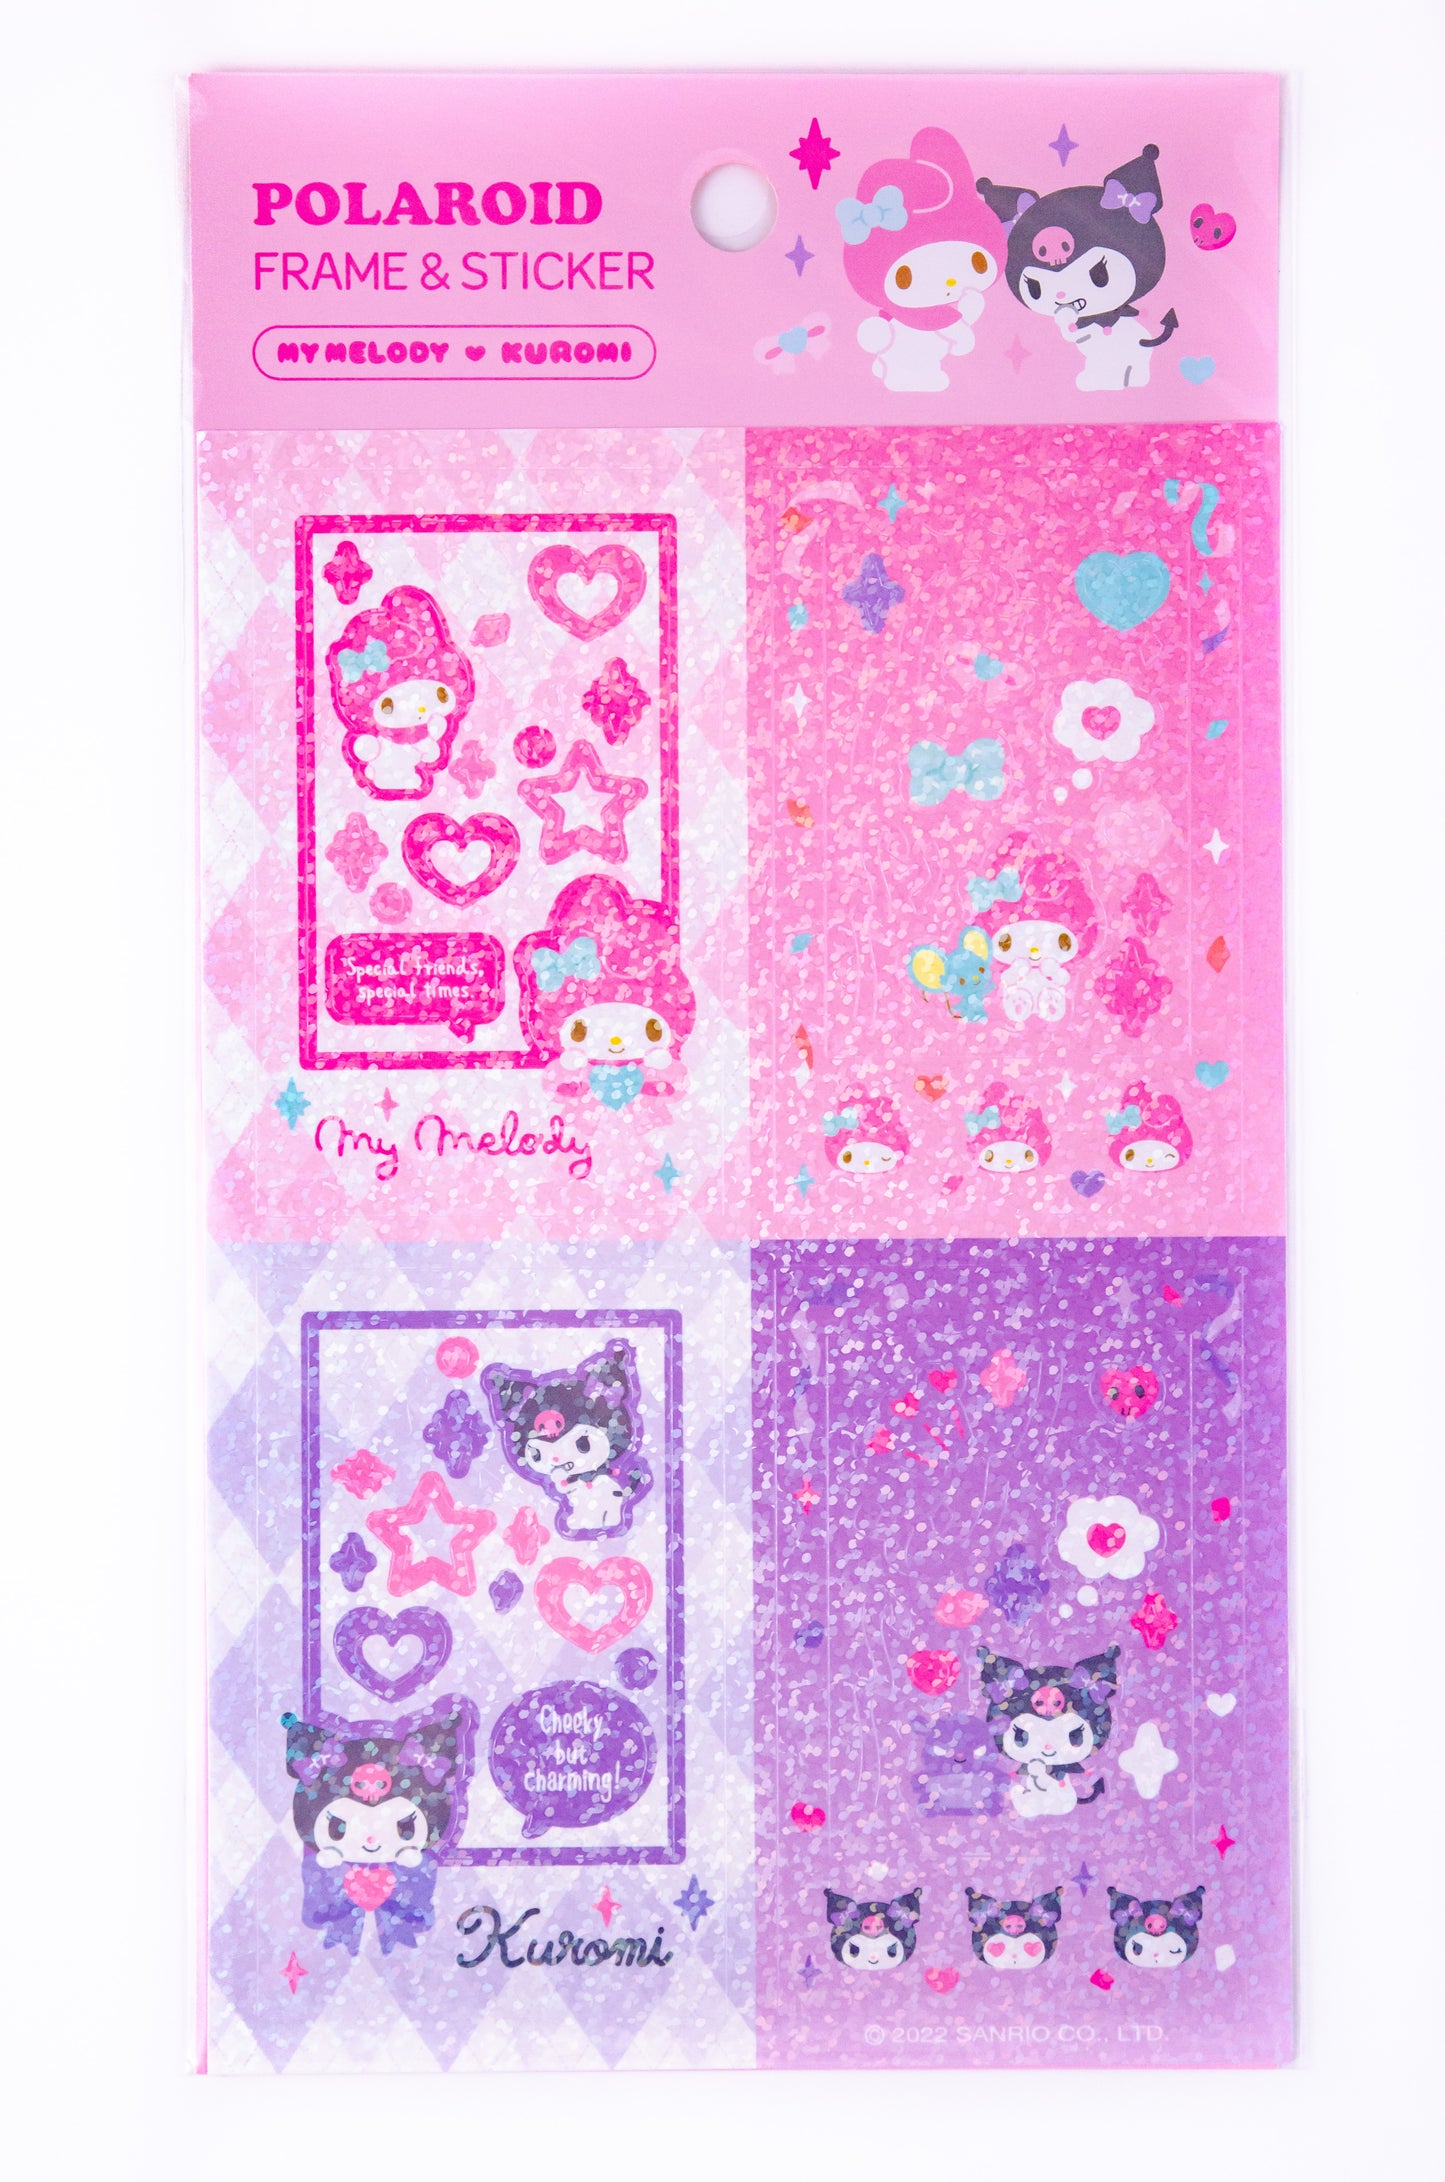 [SanrioKorea] My Melody & Kuromi Polaroid Frame Stickers (2 types)